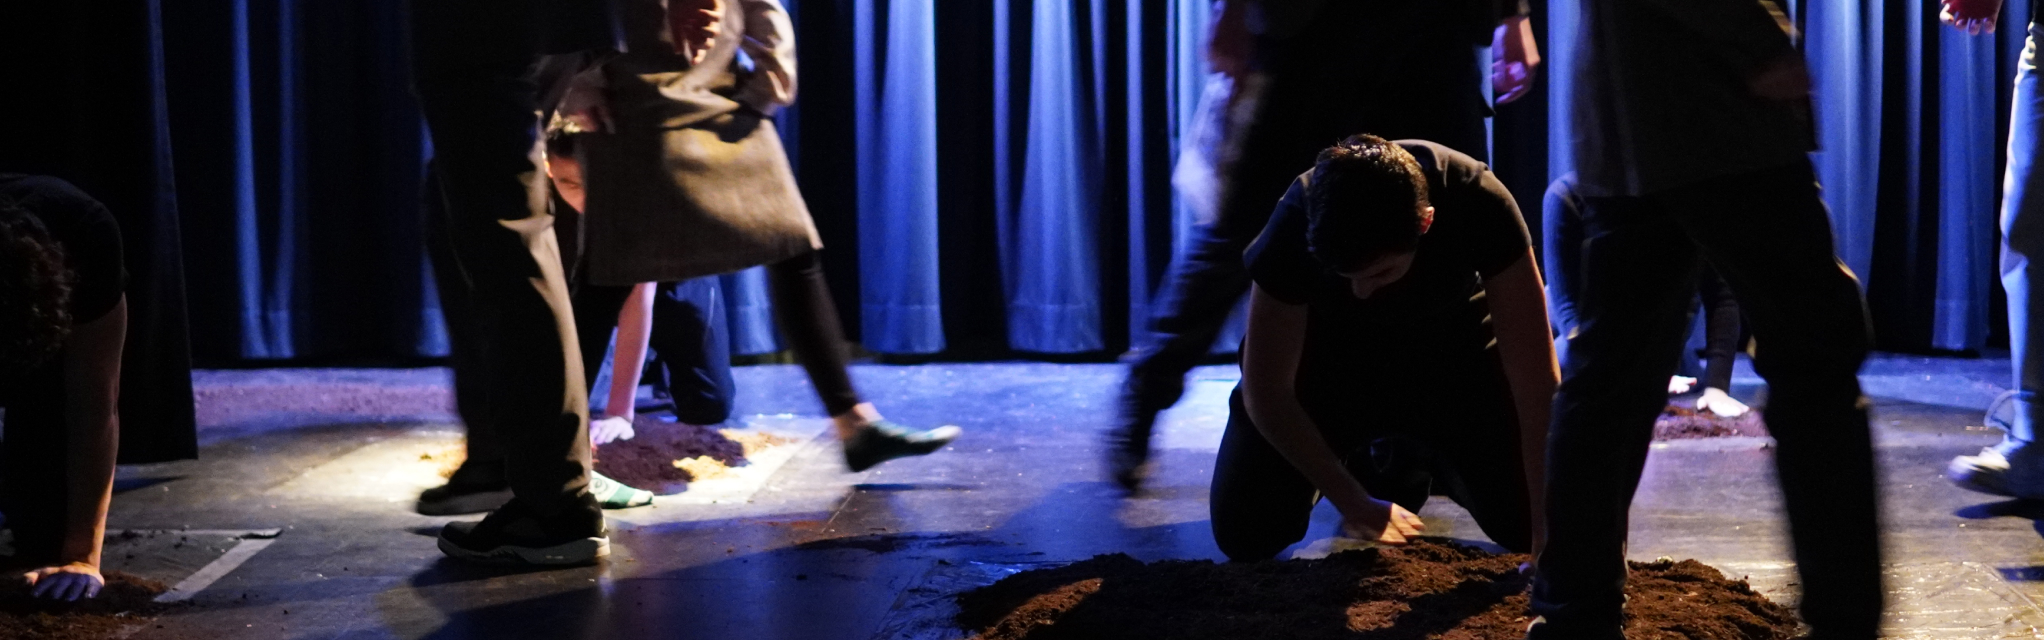 Schüler:innen laufen auf der Bühne, ein Schüler klopft Erde fest